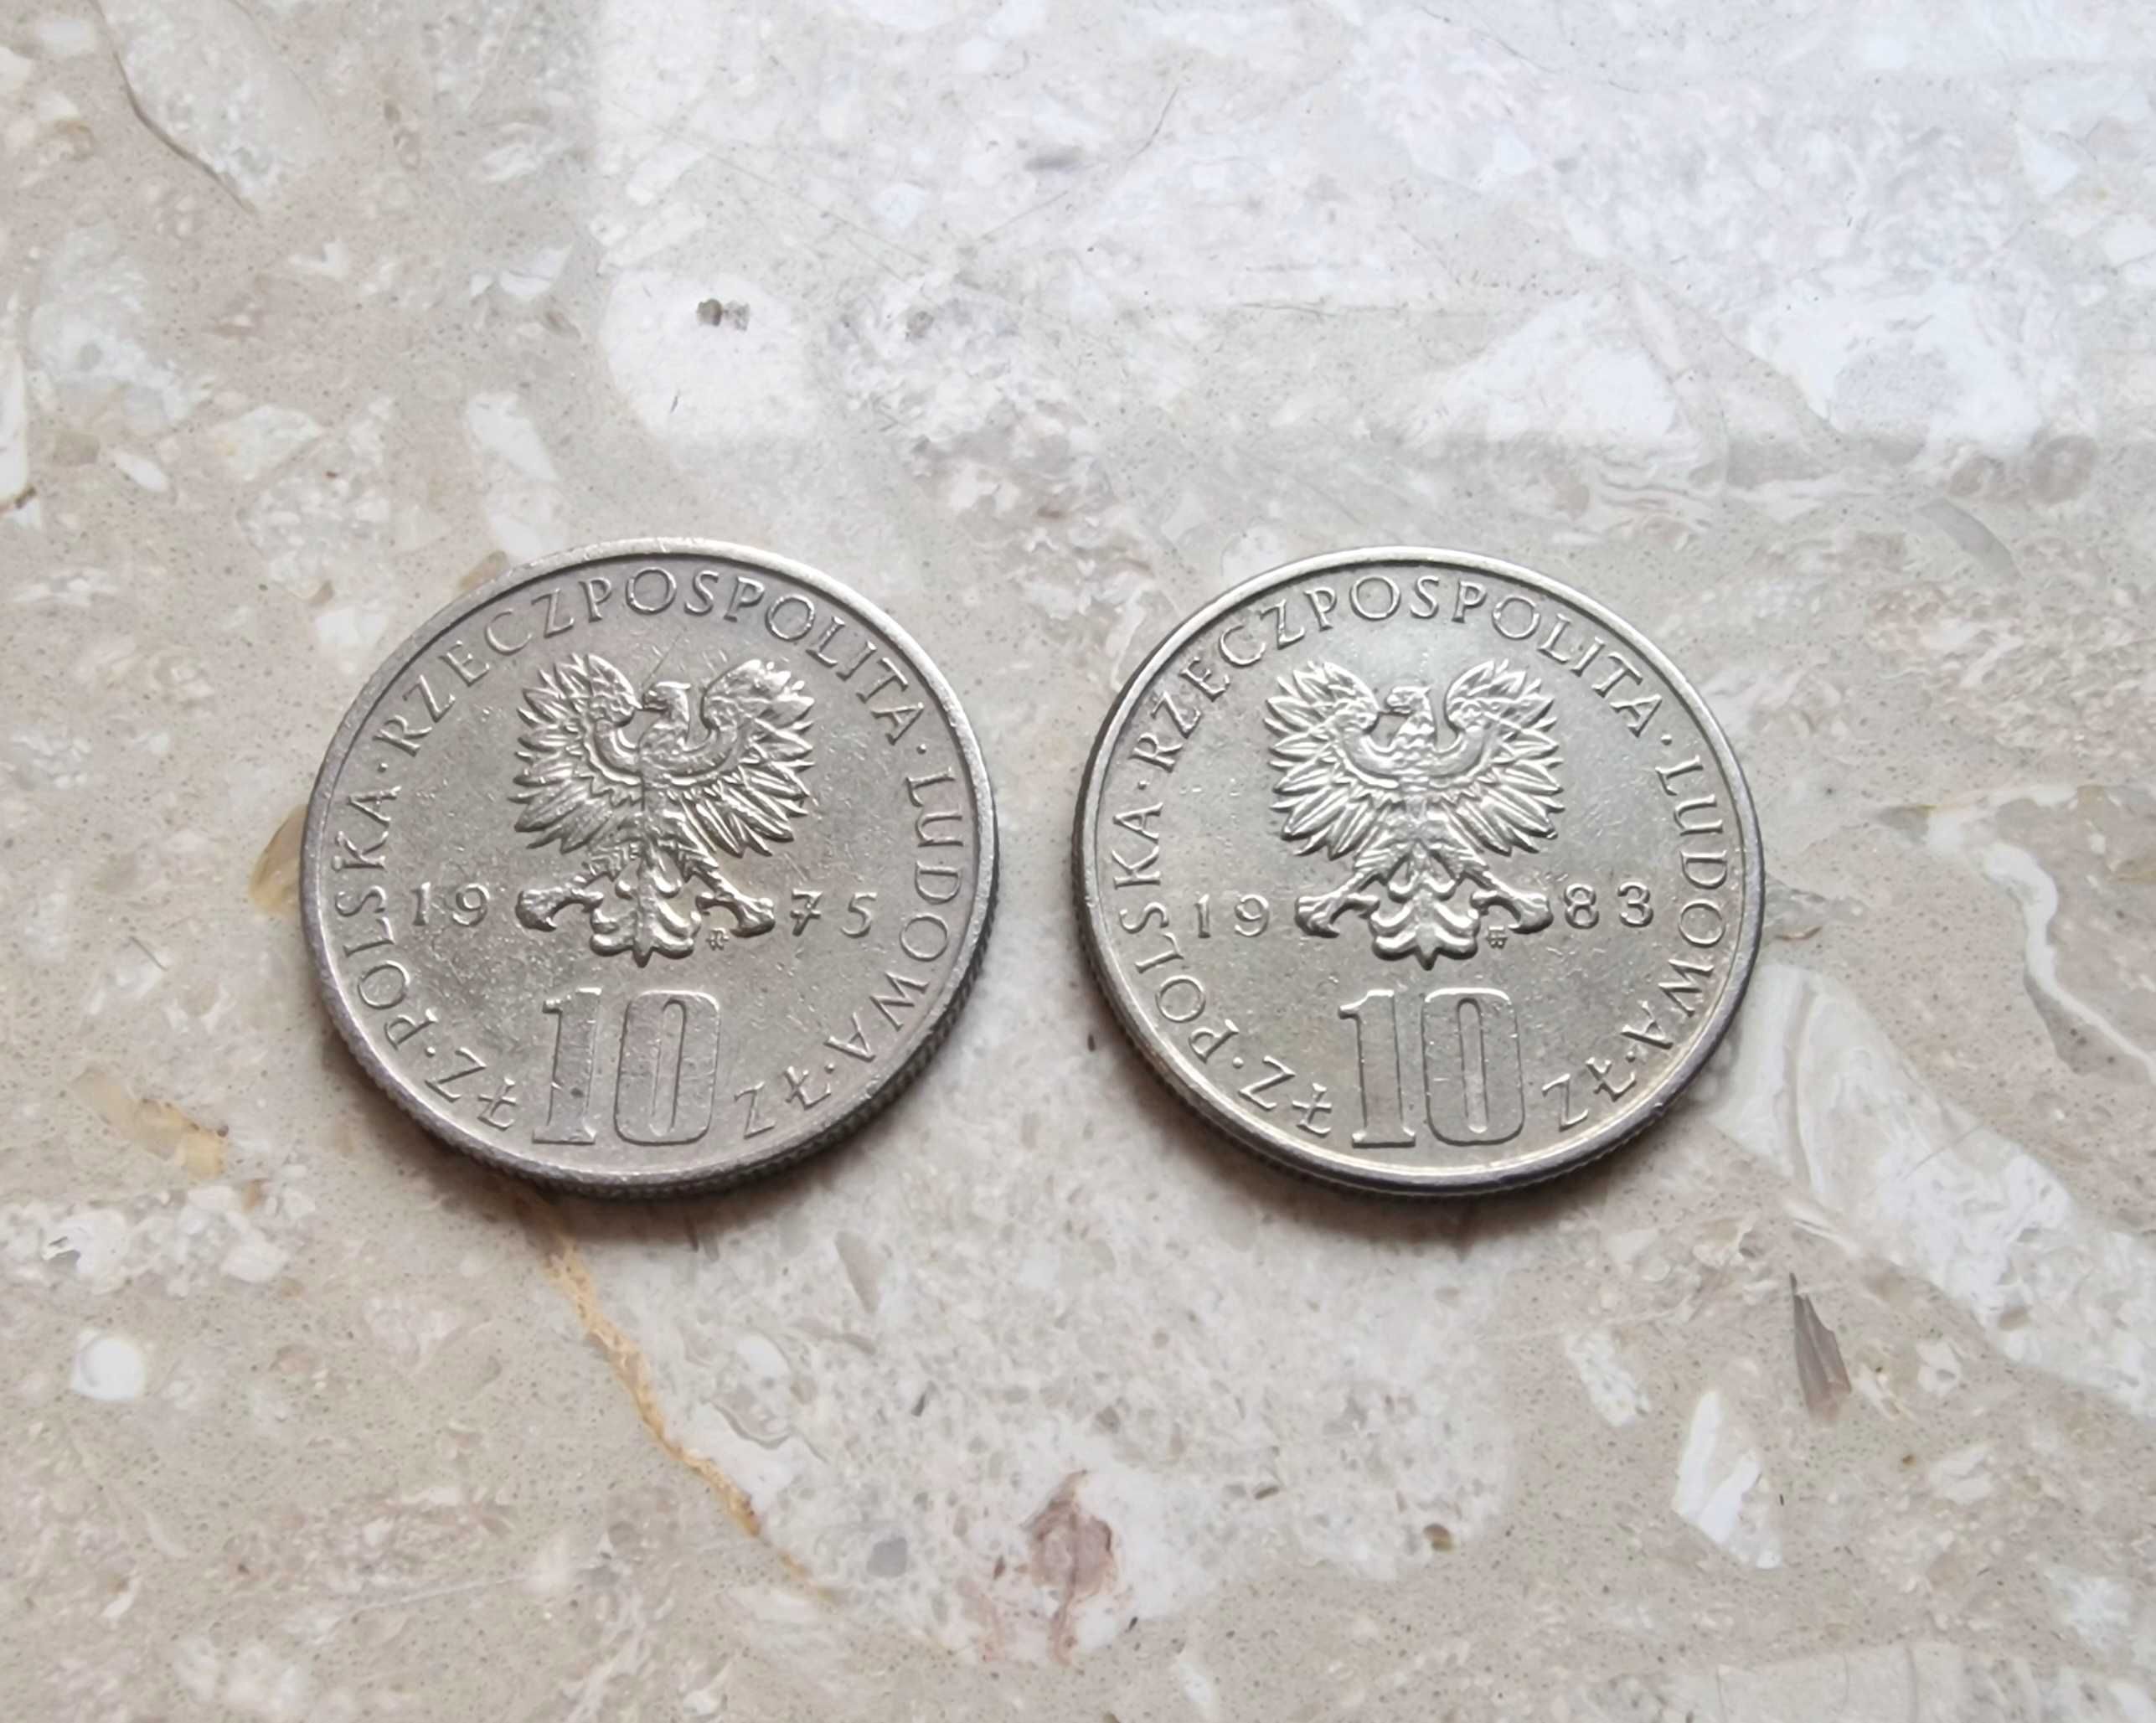 Moneta 10 zł 1975 i 1983, Bolesław Prus, cena za obydwie